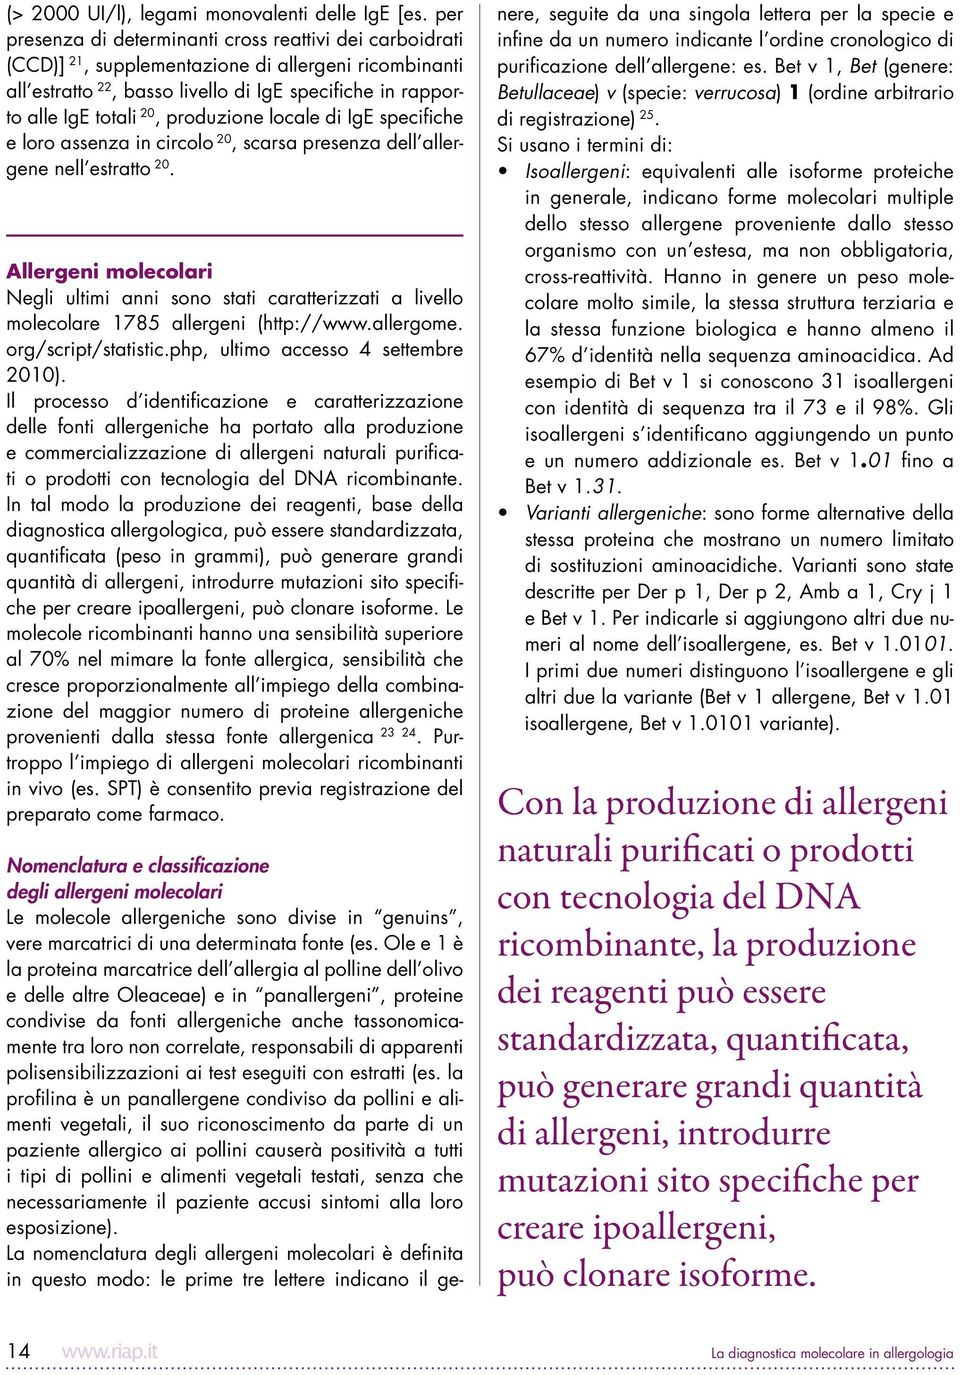 produzione locale di IgE specifiche e loro assenza in circolo 20, scarsa presenza dell allergene nell estratto 20.